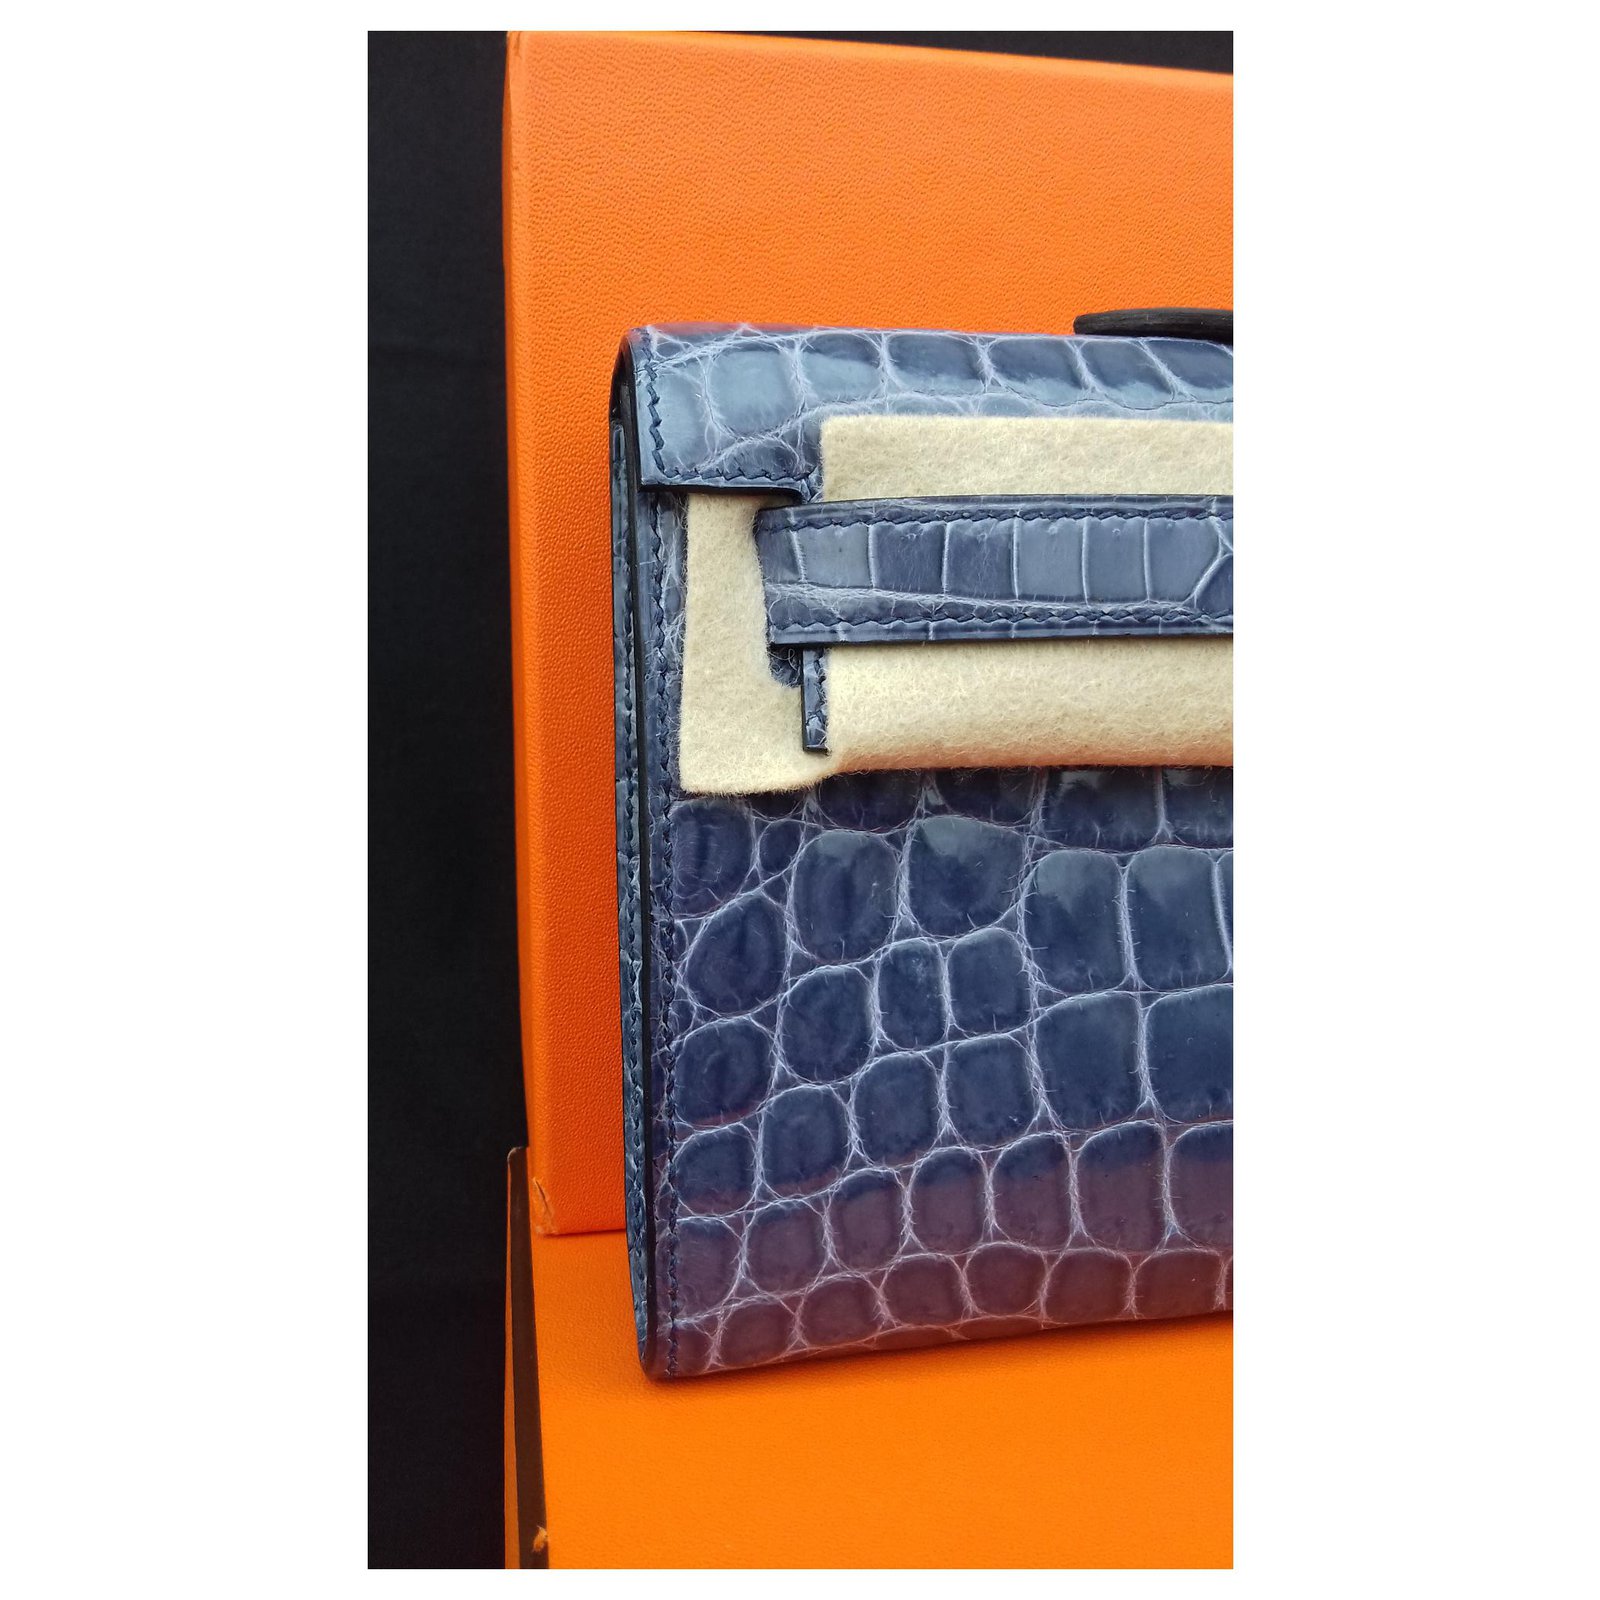 Hermes Kelly Cut Clutch crocodile clutch bag - ShopStyle